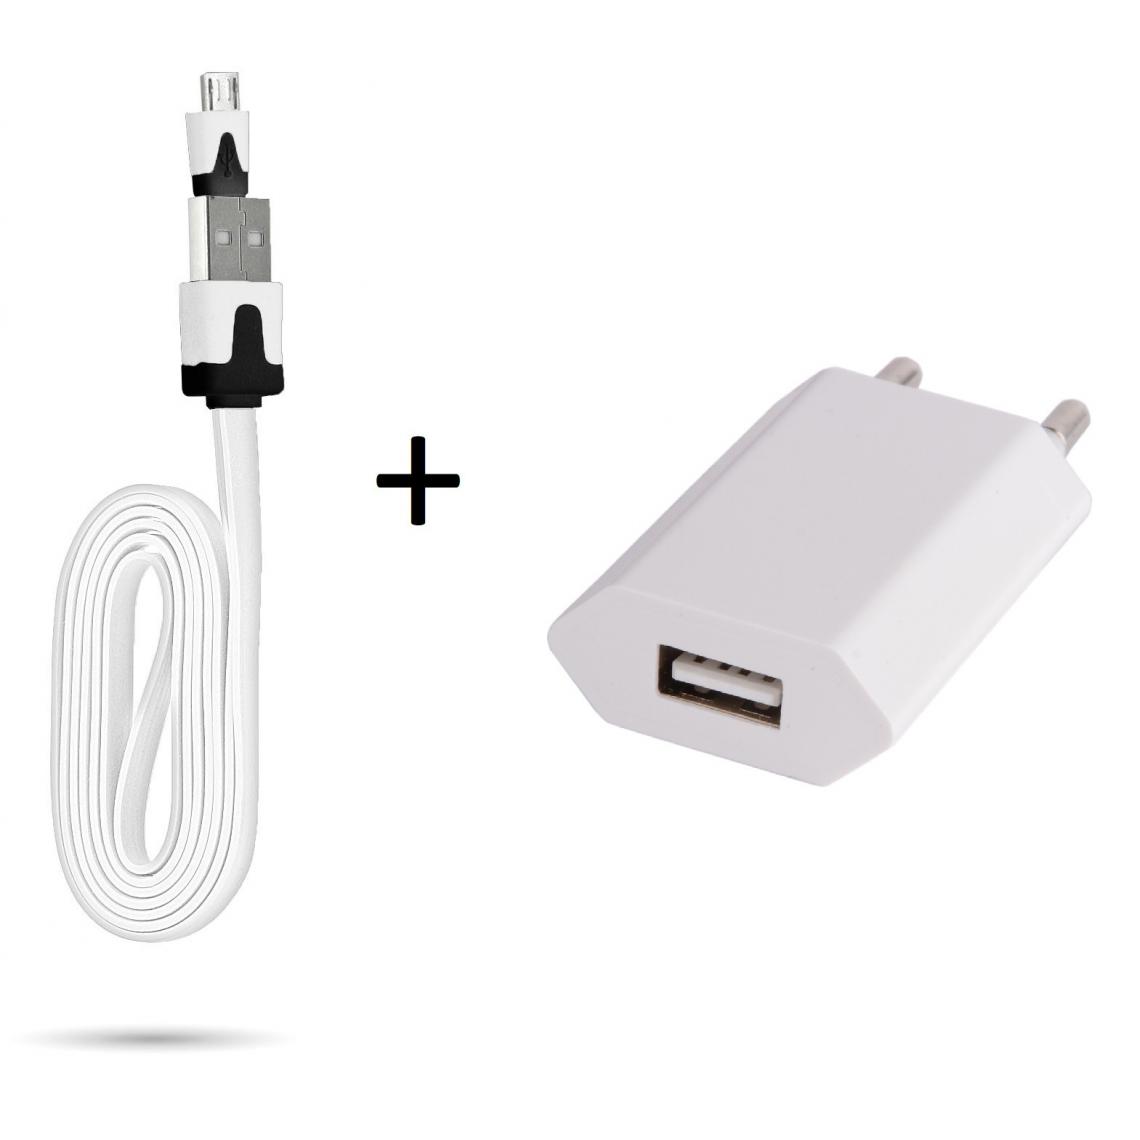 Shot - Cable Noodle 1m Chargeur + Prise Secteur pour WIKO Y60 Smartphone Micro USB Murale Pack Android (BLANC) - Chargeur secteur téléphone